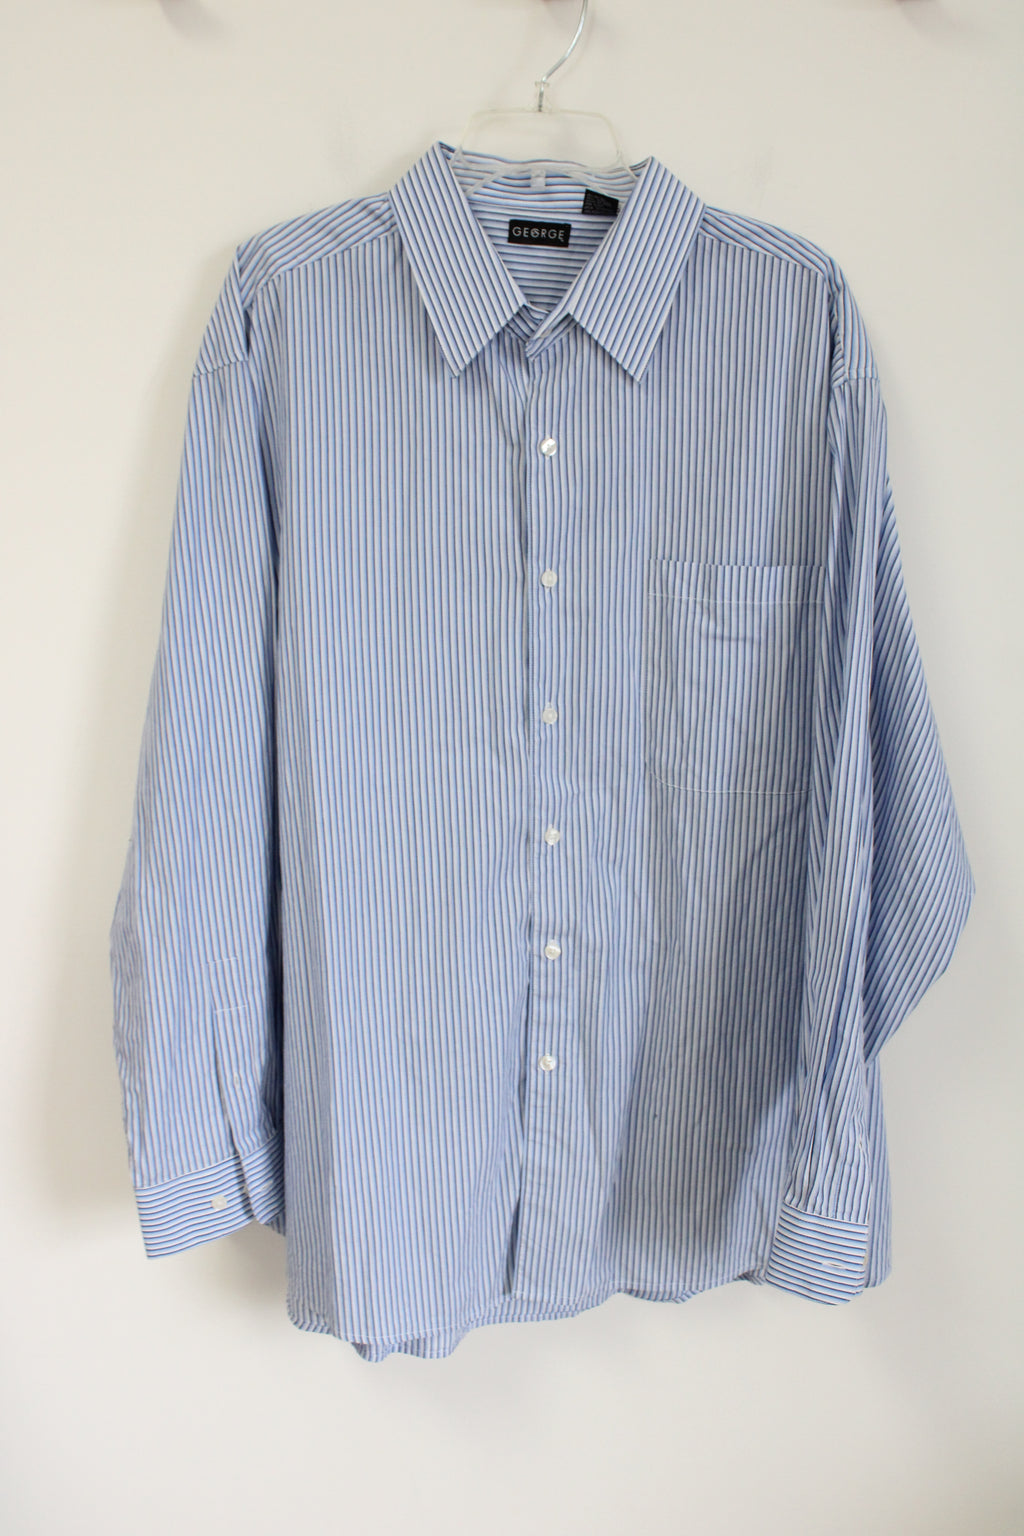 George Blue Striped Button Down Shirt | 2XL (50-52)